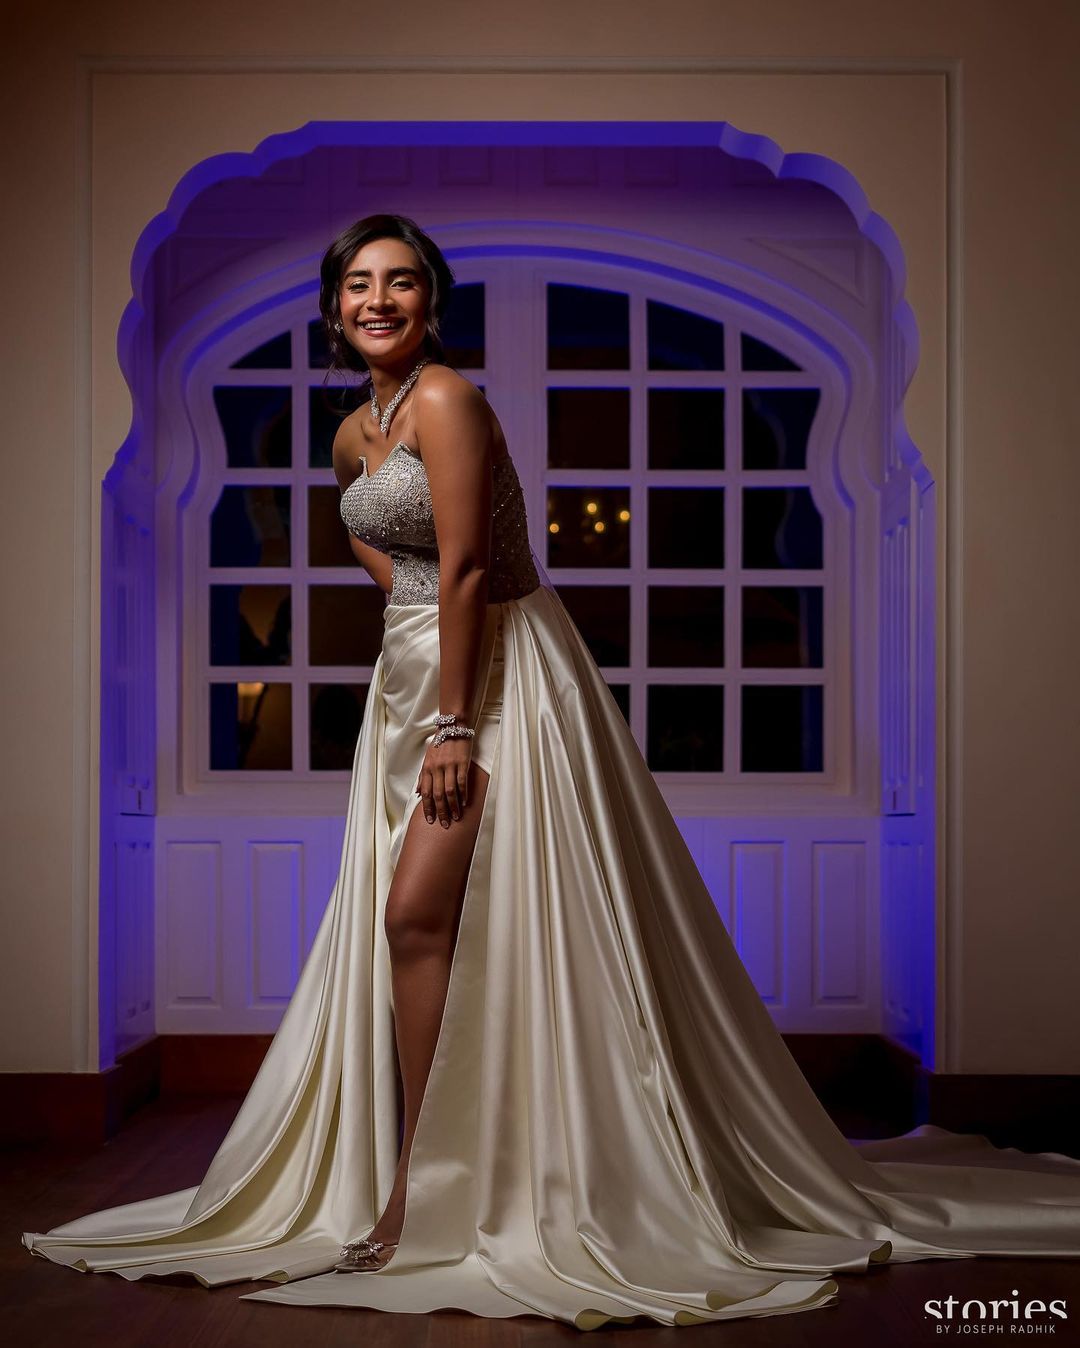 Patralekha's engagement gown